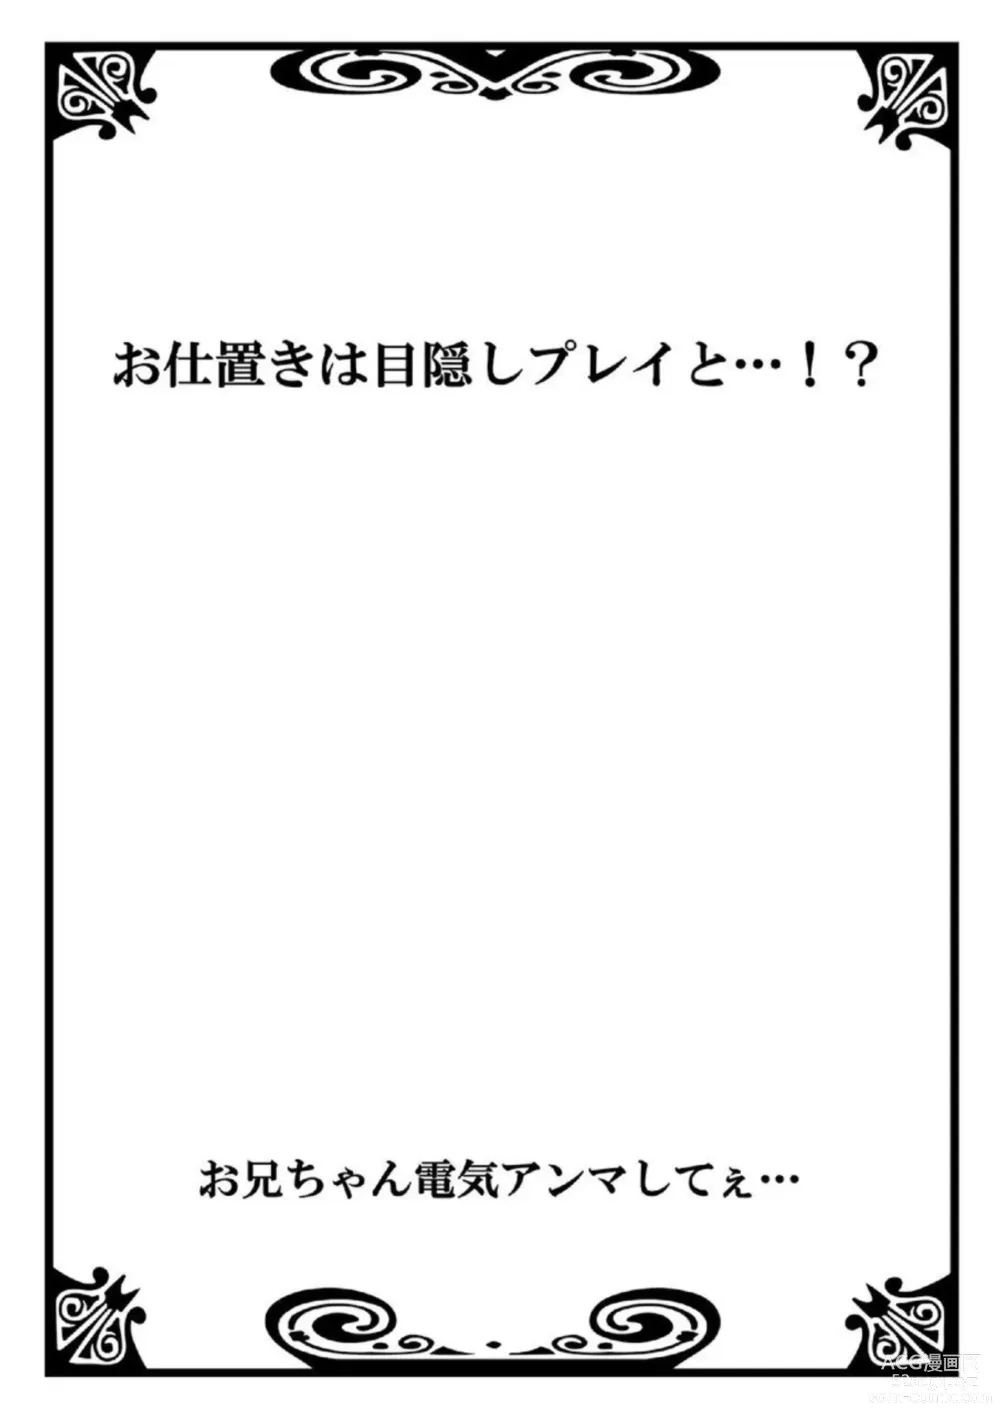 Page 46 of manga Onii-chan Denki Anma Shitee... 1